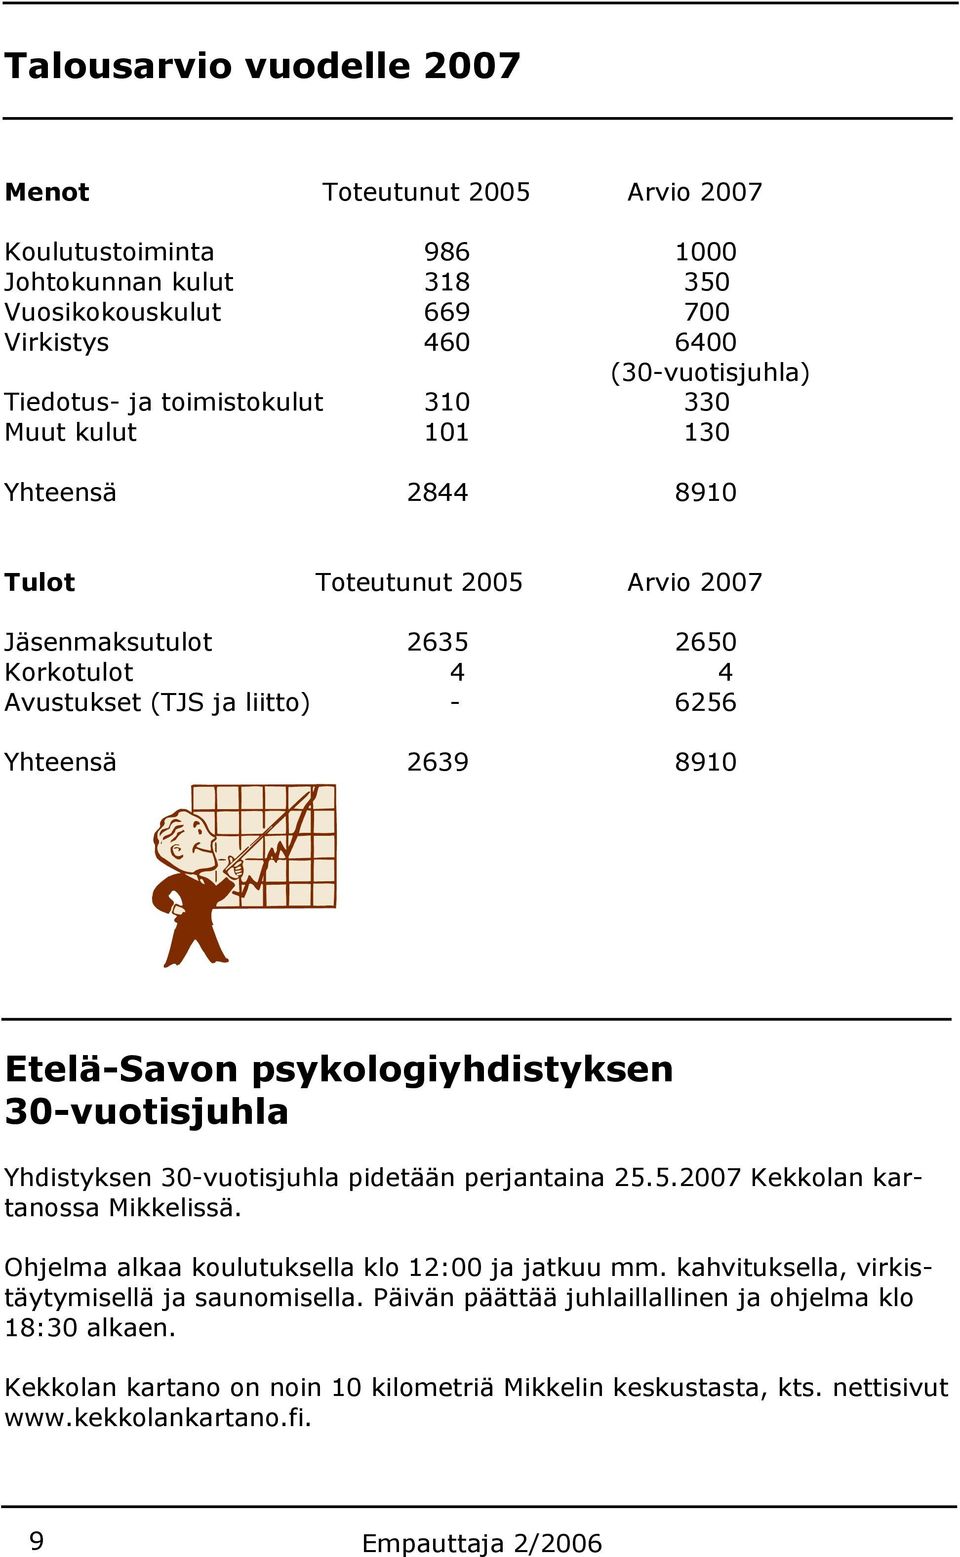 Etelä-Savon psykologiyhdistyksen 30-vuotisjuhla Yhdistyksen 30-vuotisjuhla pidetään perjantaina 25.5.2007 Kekkolan kartanossa Mikkelissä. Ohjelma alkaa koulutuksella klo 12:00 ja jatkuu mm.